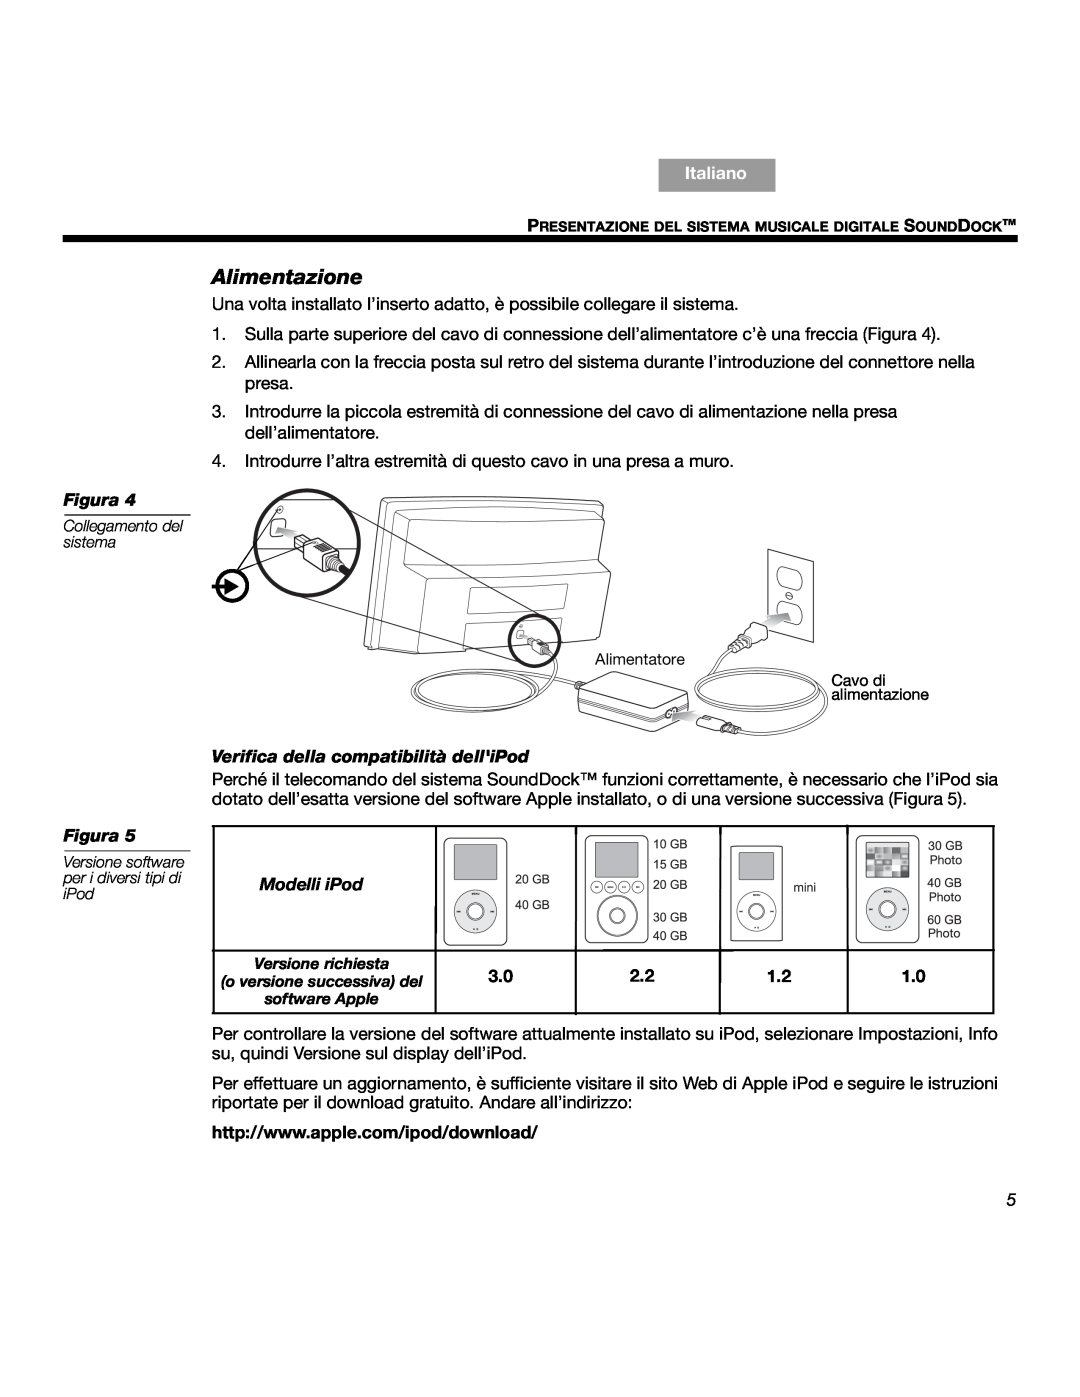 Bose SOUNDDOCKTM manual Alimentazione, Verifica della compatibilità delliPod, Modelli iPod, Italiano, Figura 